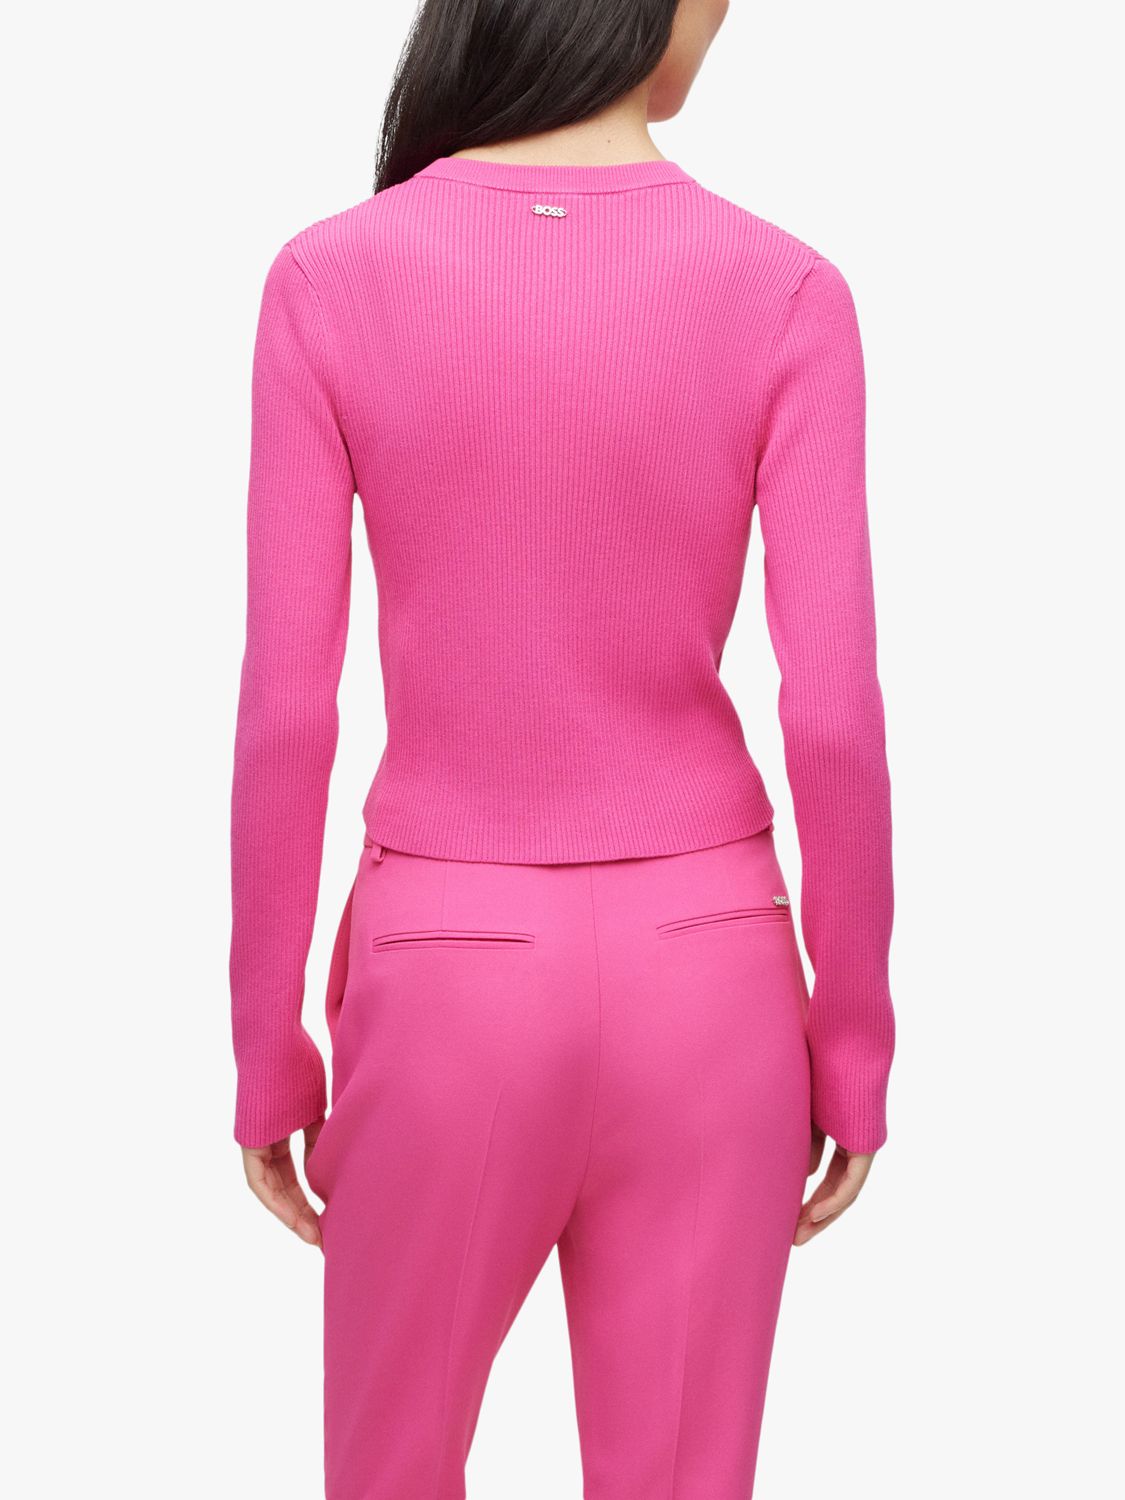 HUGO BOSS Fahara Ribbed Cardigan, Medium Pink, XS